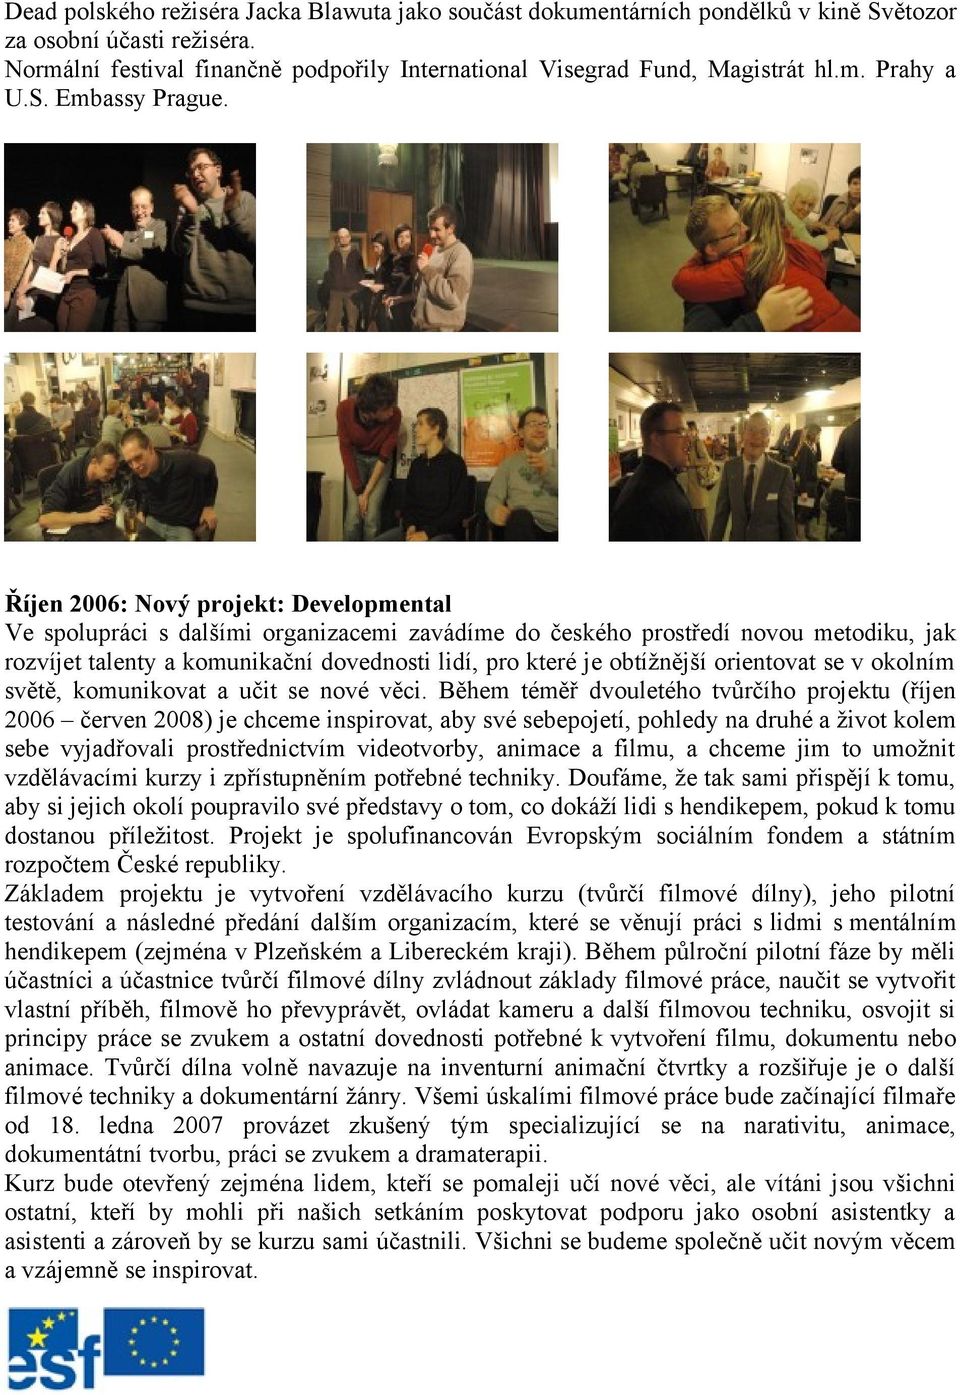 Říjen 2006: Nový projekt: Developmental Ve spolupráci s dalšími organizacemi zavádíme do českého prostředí novou metodiku, jak rozvíjet talenty a komunikační dovednosti lidí, pro které je obtížnější